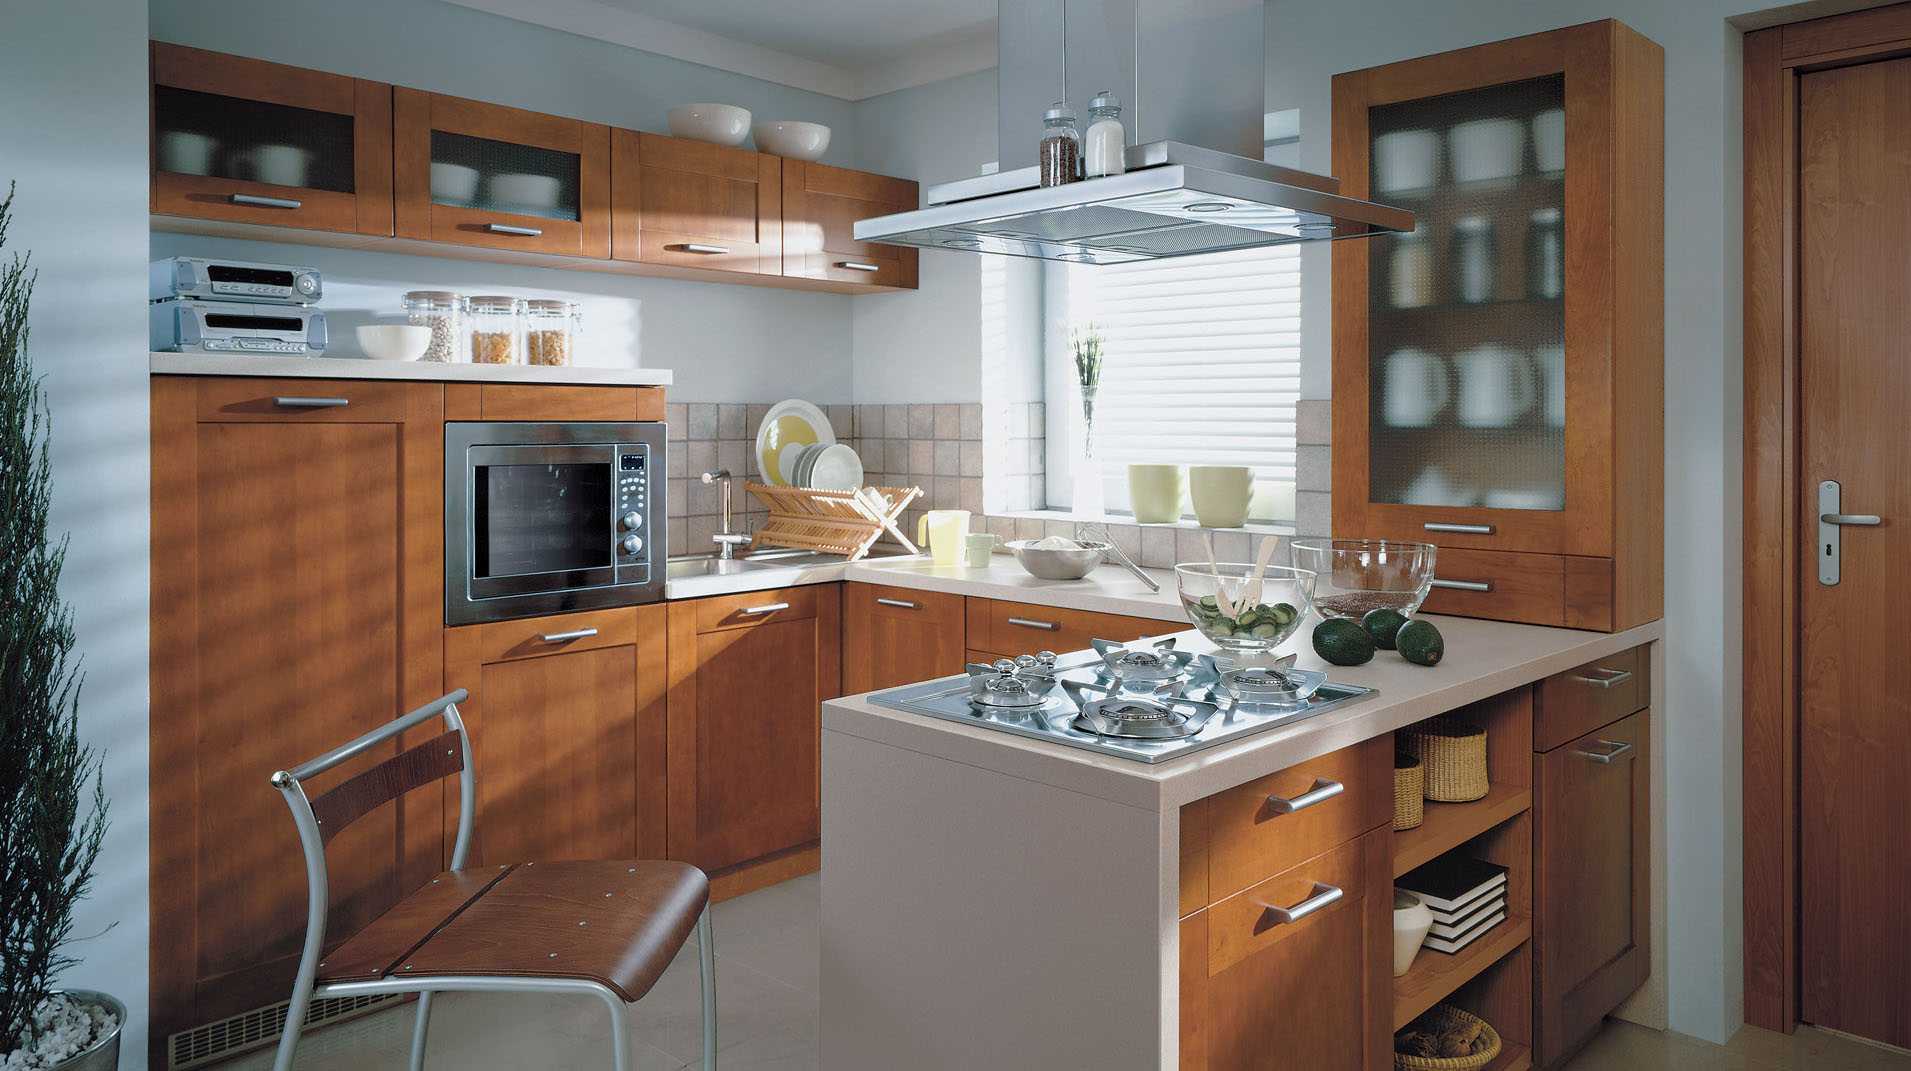 Кухня в частном доме: самые правильные варианты обустройства кухни (135 фото)варианты планировки и дизайна